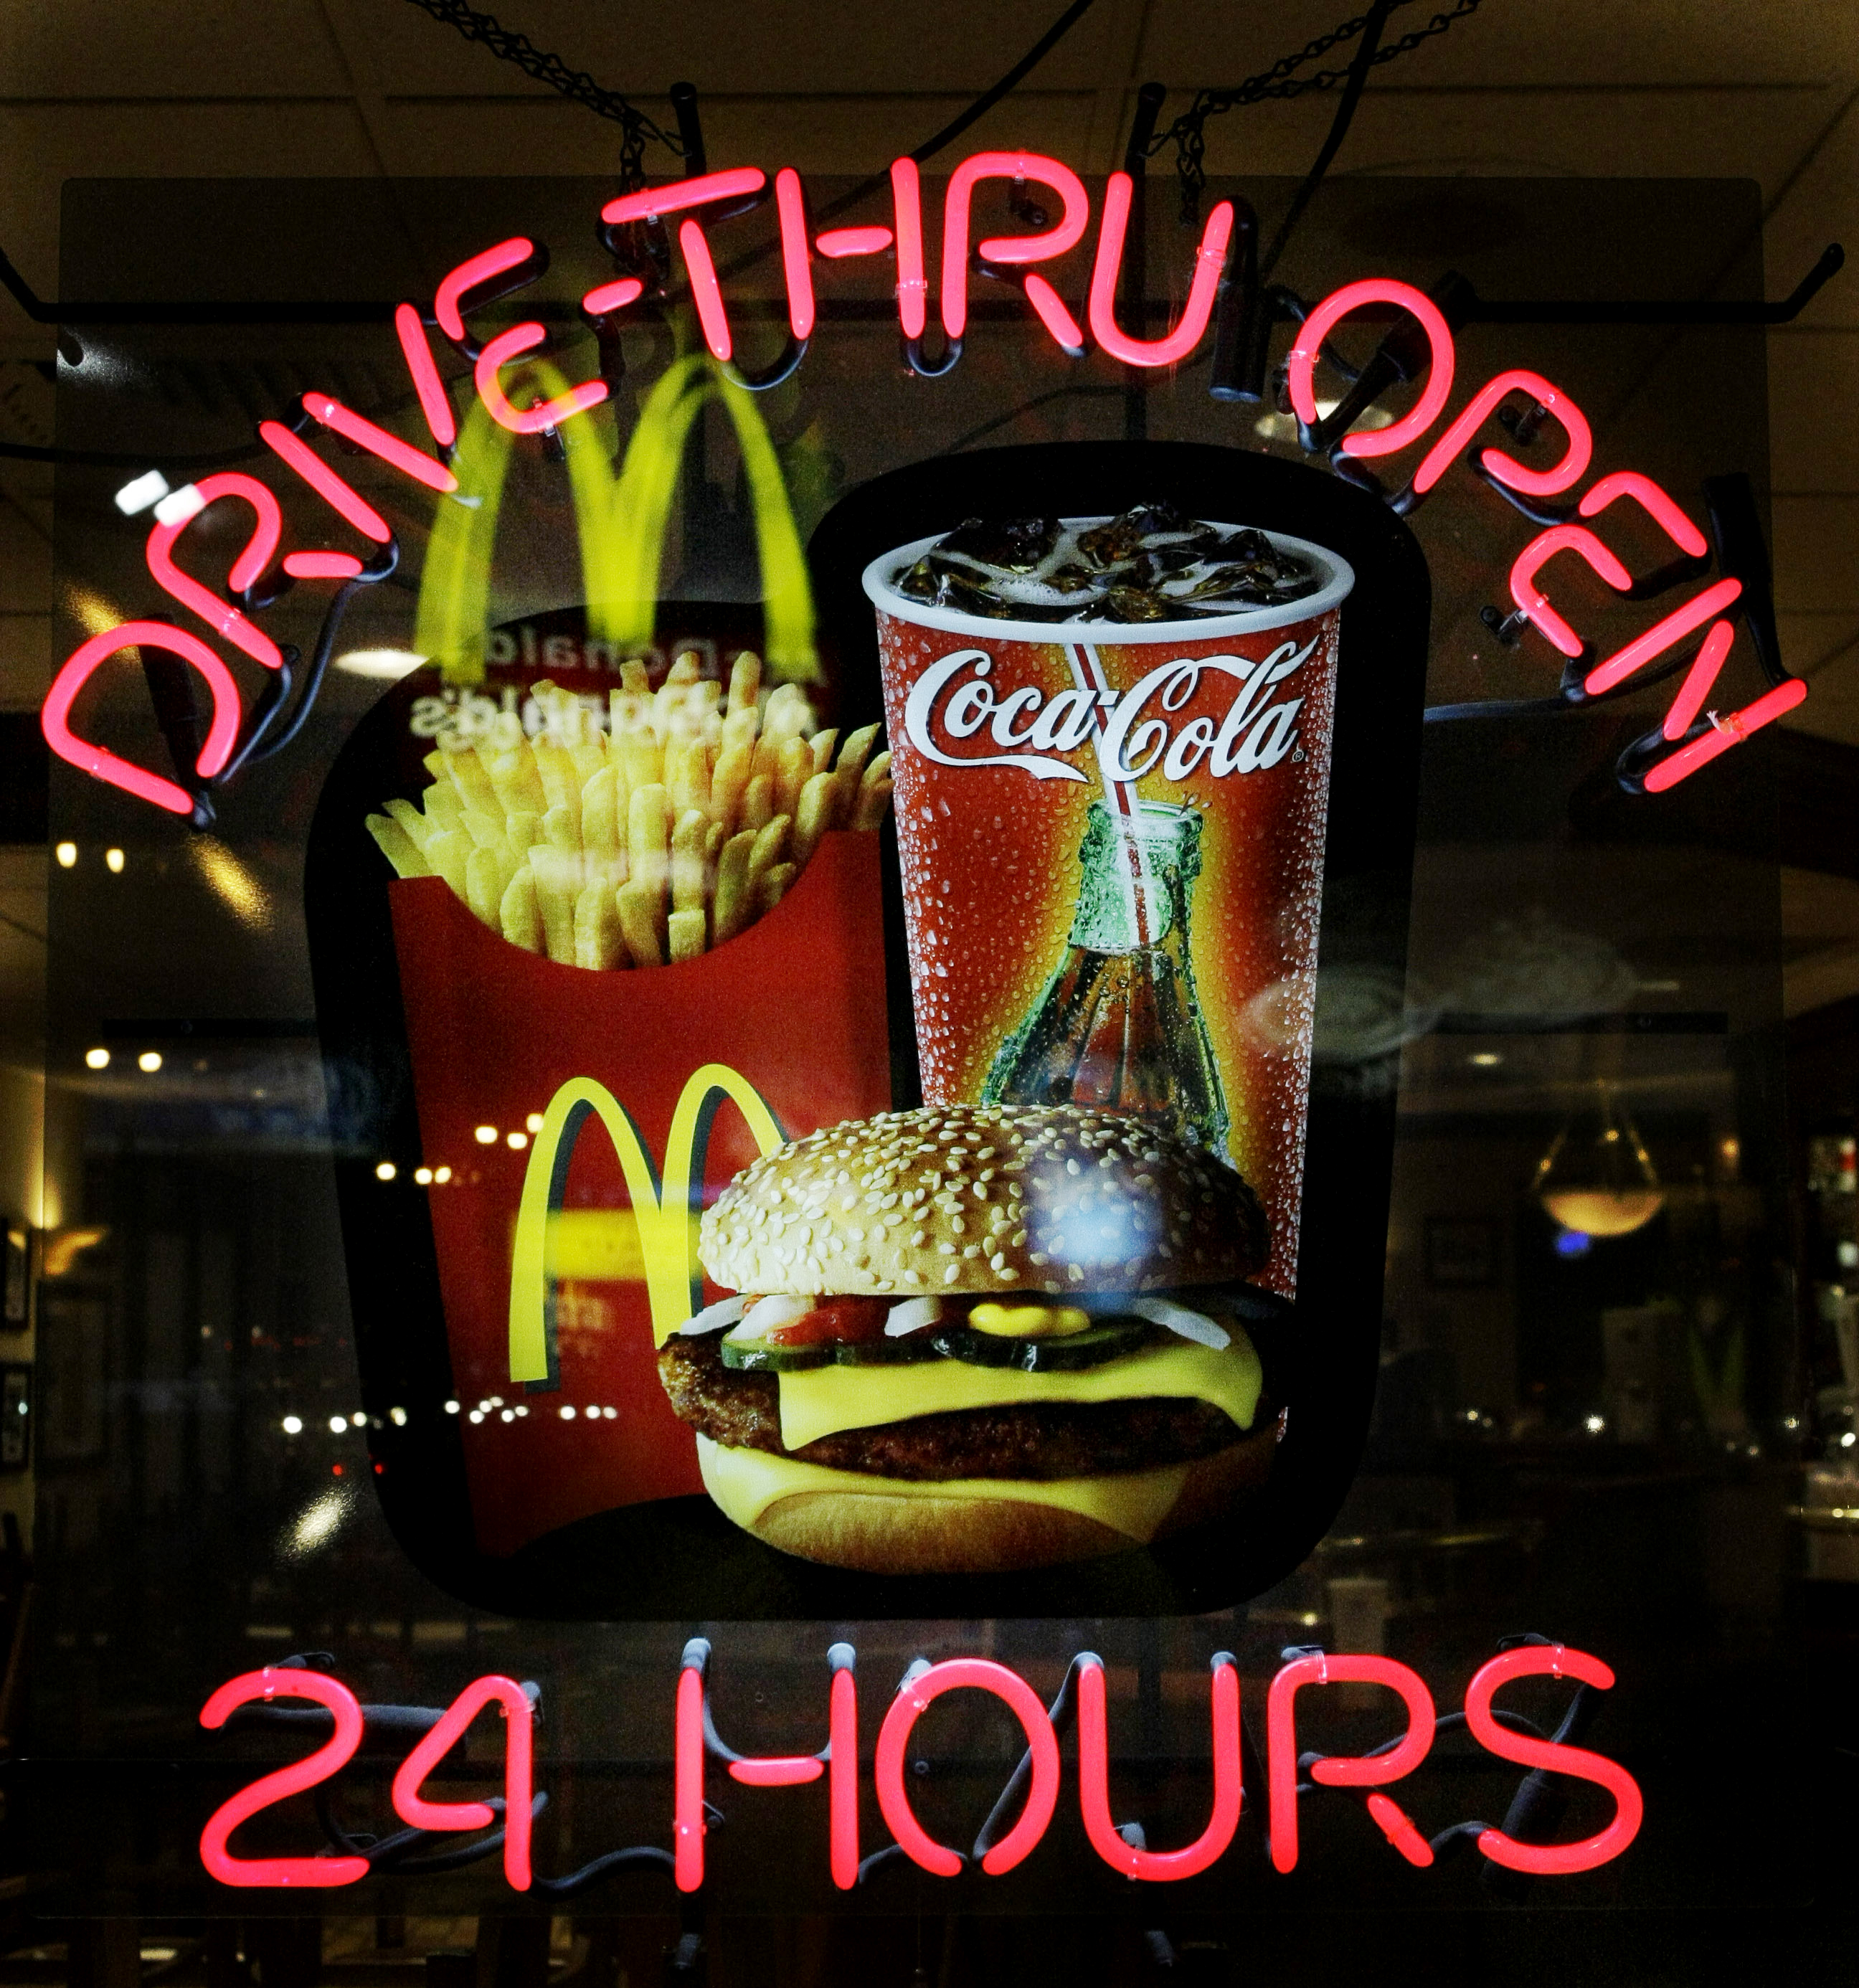 I den nya videon berättar McDonalds sanningen bakom de perfekta menybilderna.